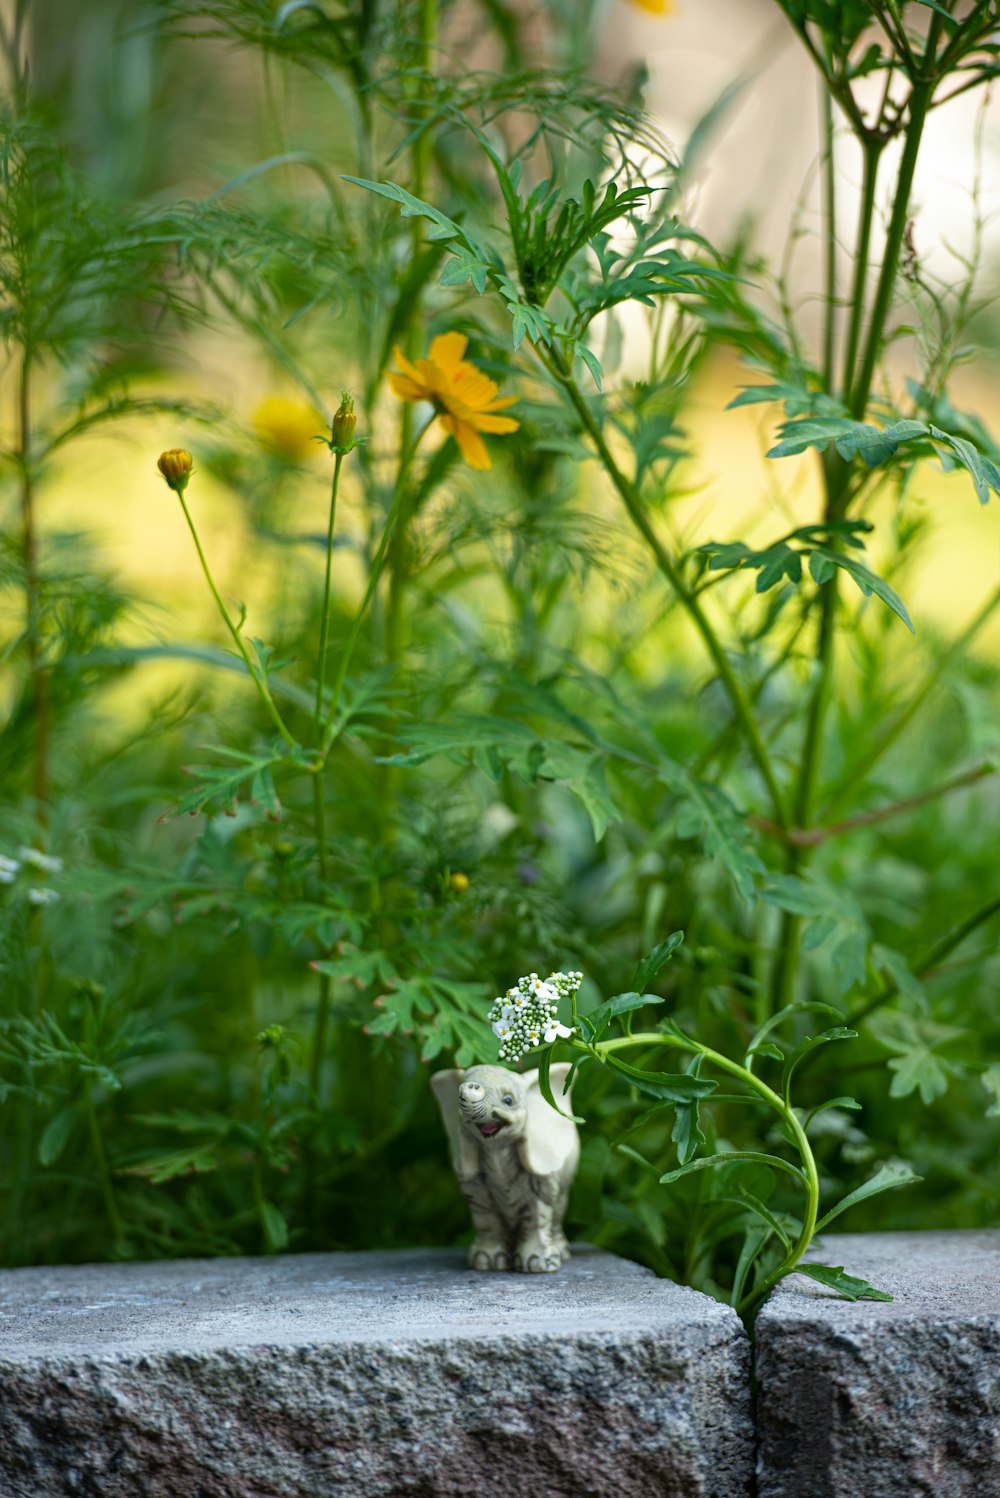 꽃밭 앞의 고양이 동상